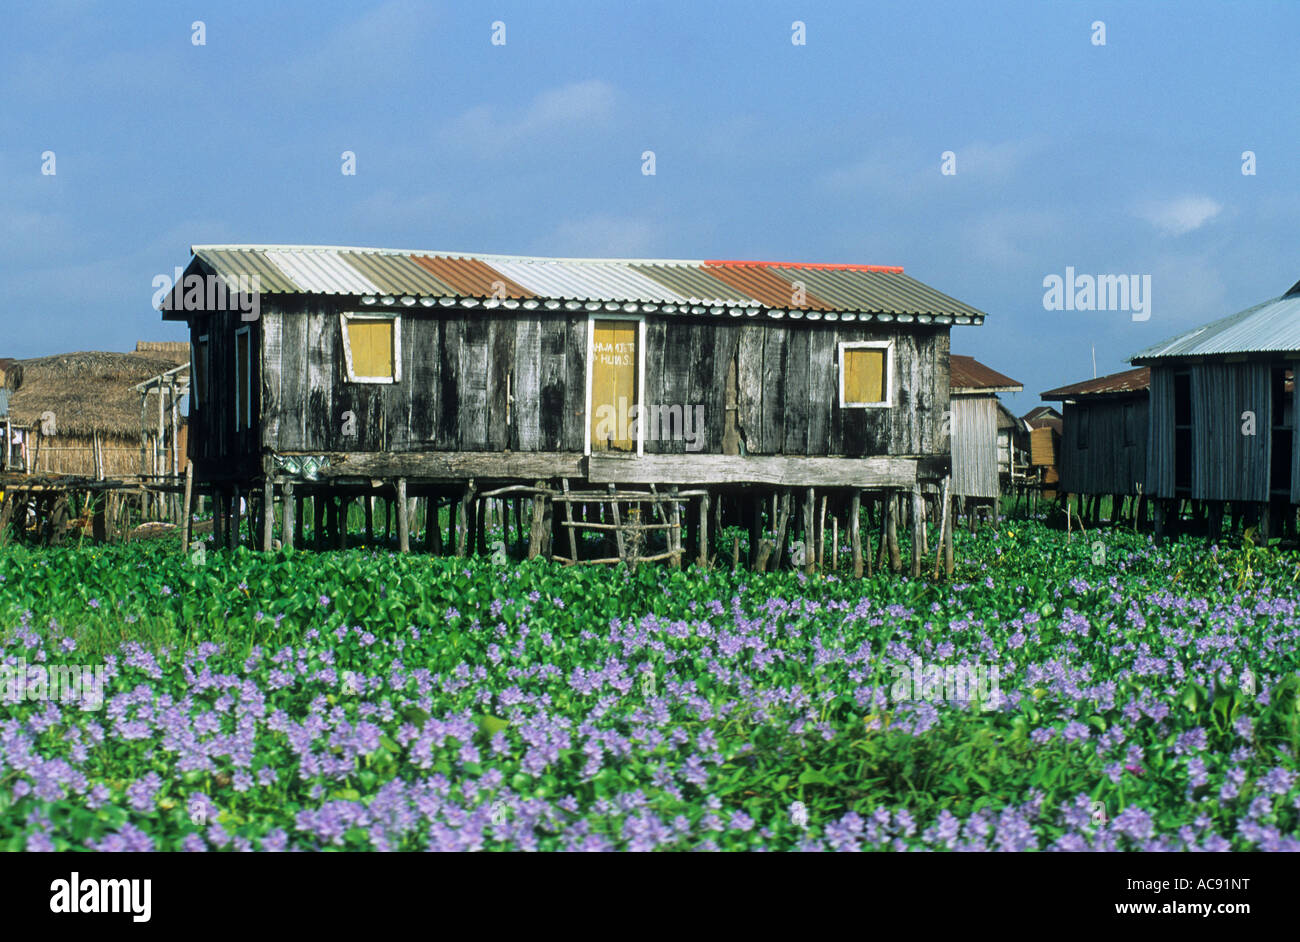 House on stilts amongst dense aquatic vegetation Ganvie; Benin Stock Photo